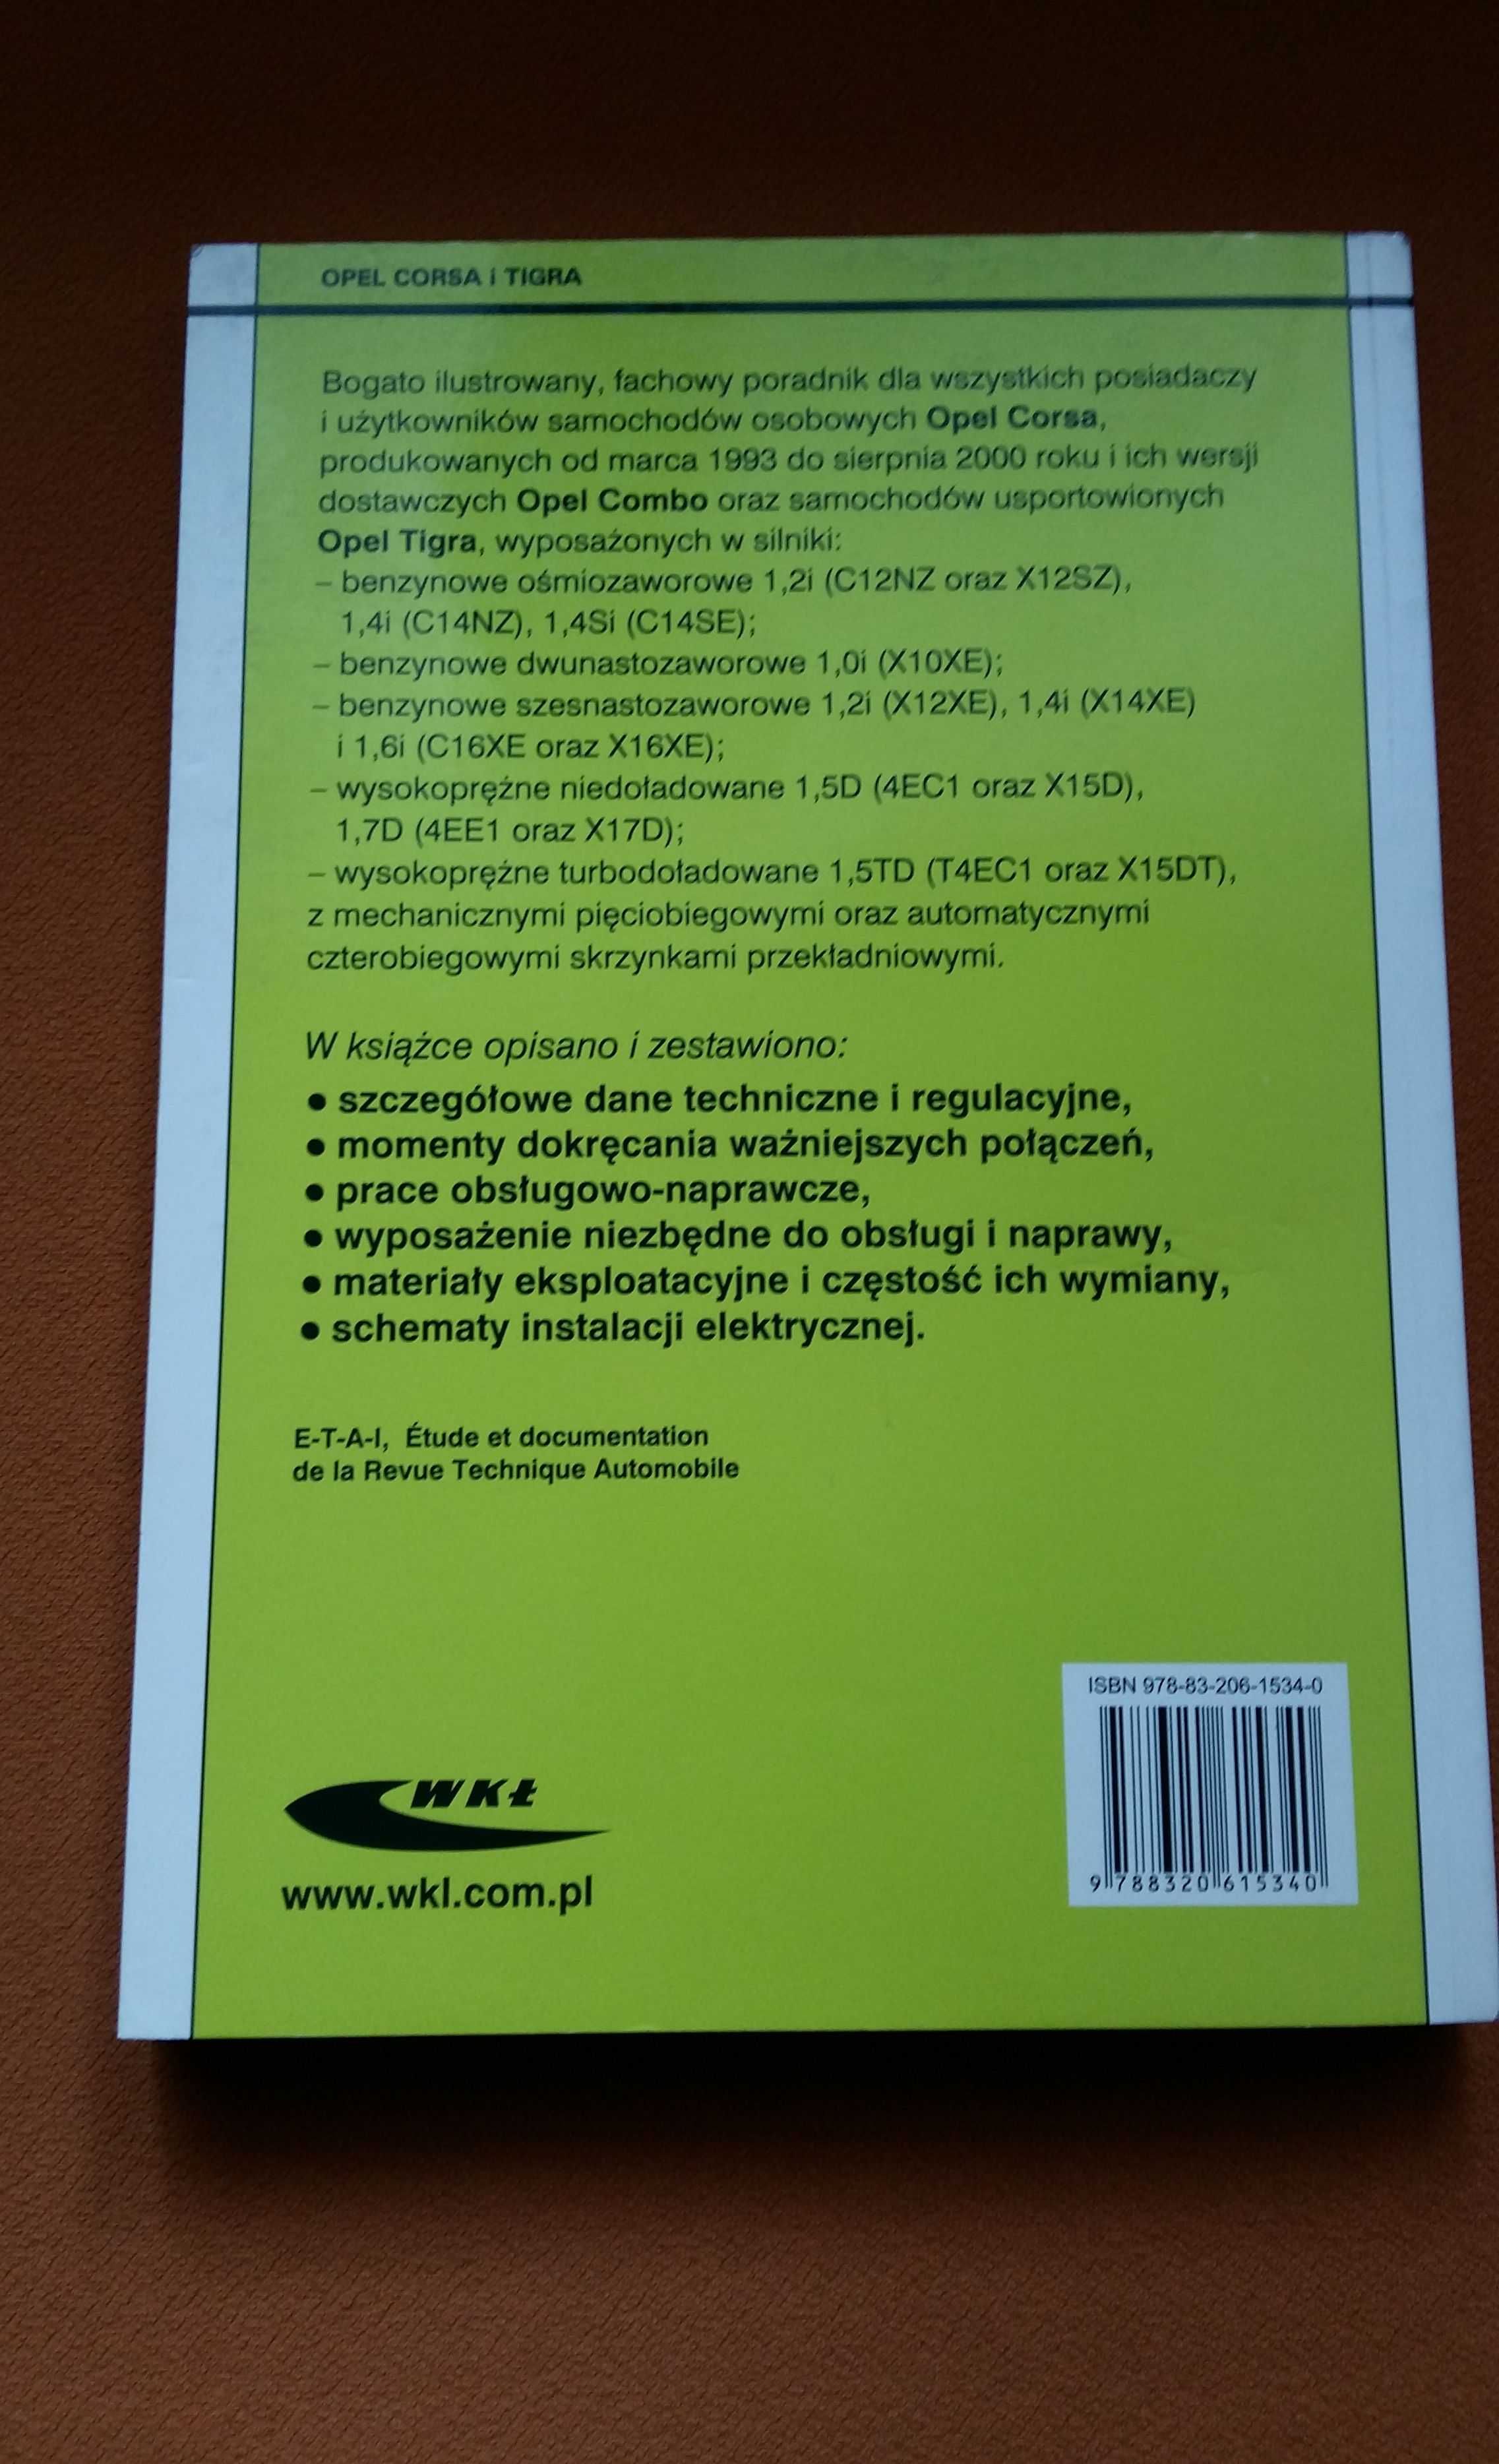 Opel Corsa i Tigra - Krzysztof Wiśniewski poradnik,instrukcja.